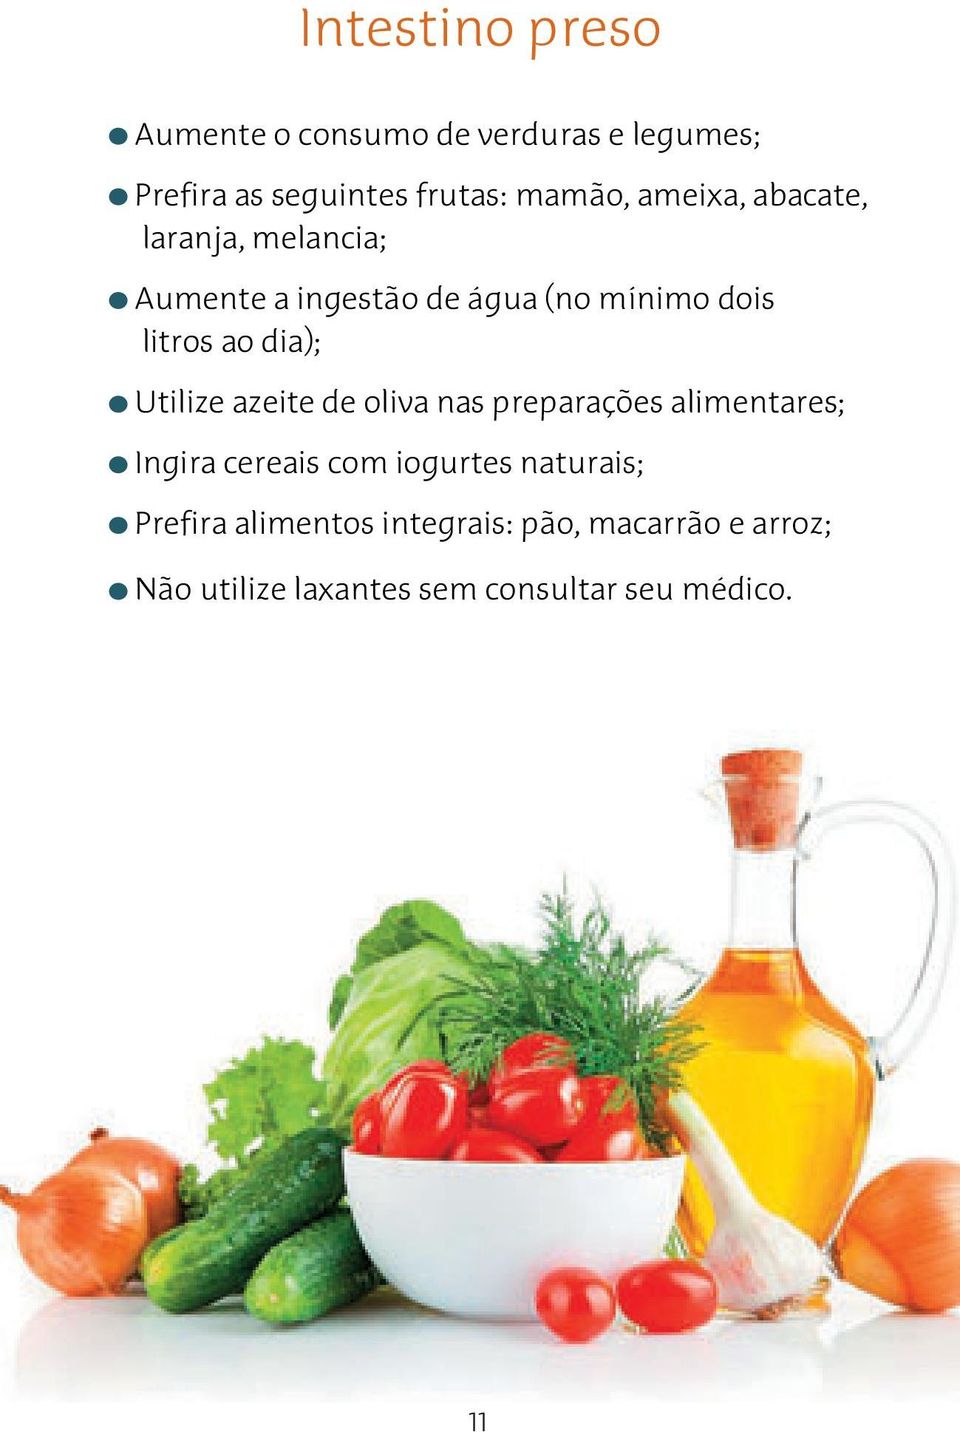 Utilize azeite de oliva nas preparações alimentares; Ingira cereais com iogurtes naturais;